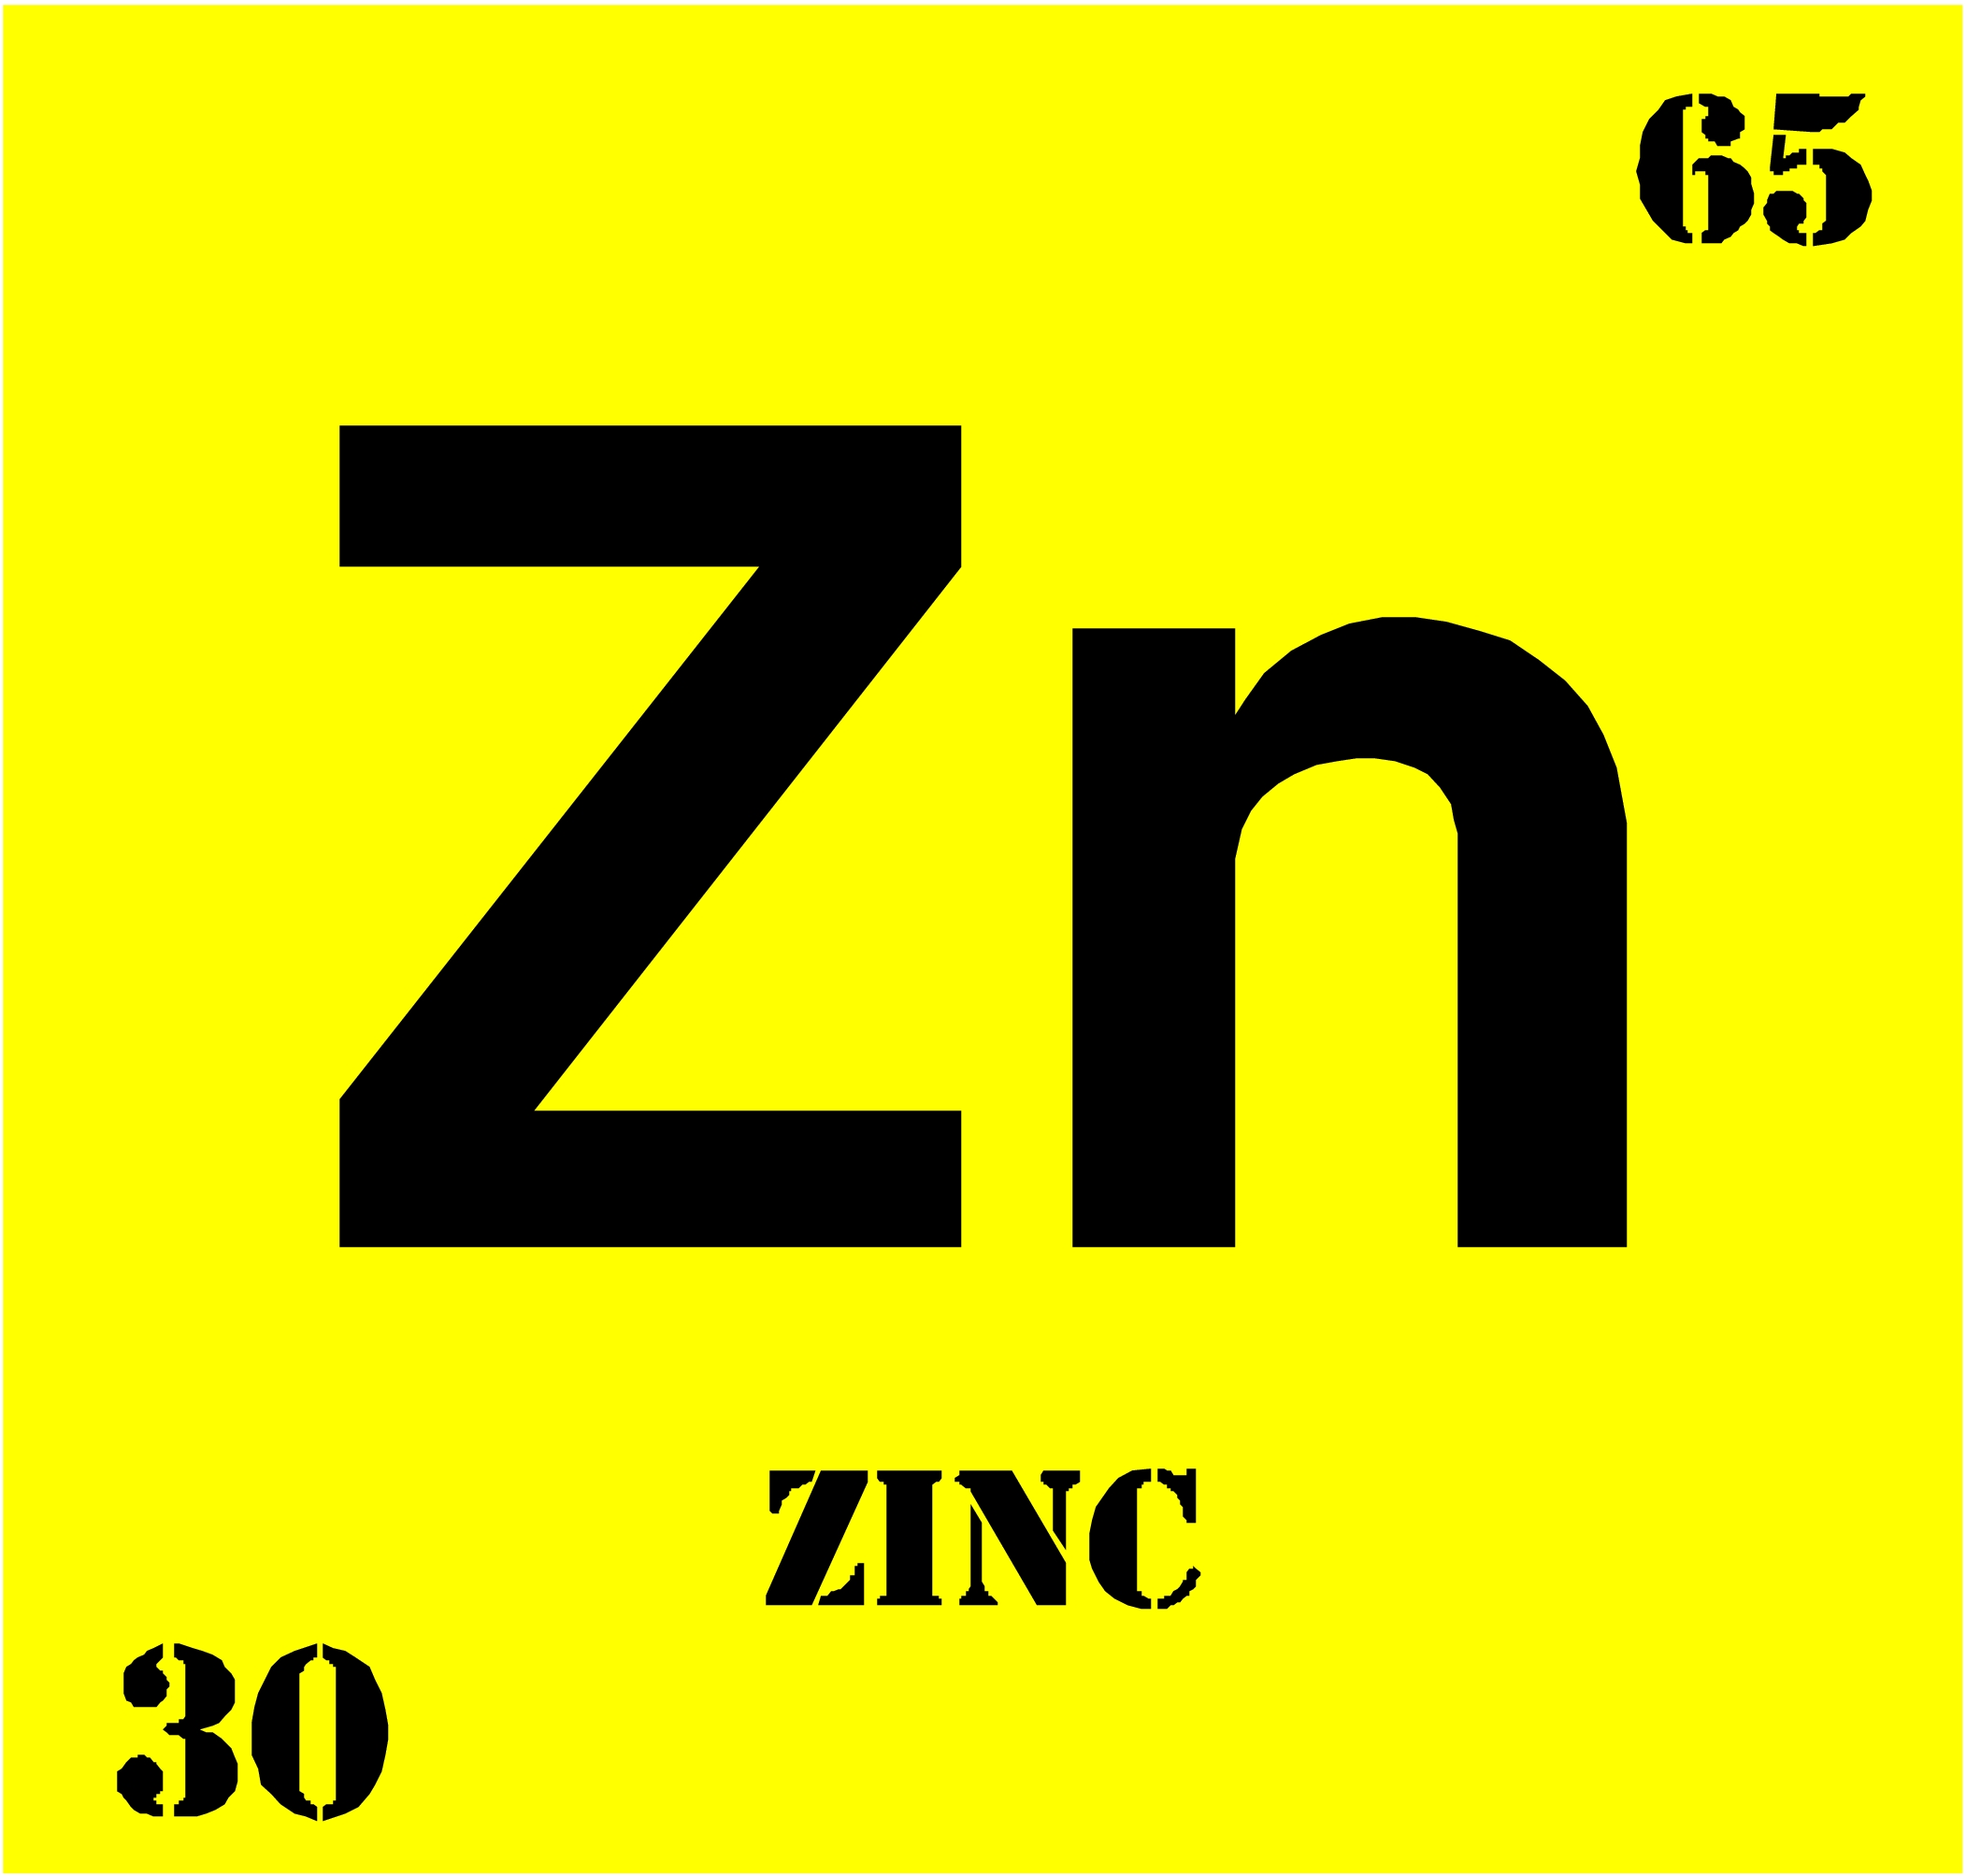 Zn это какой. Цинк хим элемент. Цинк название элемента. Цинк химический элемент обозначение. Знак цинка в таблице Менделеева.